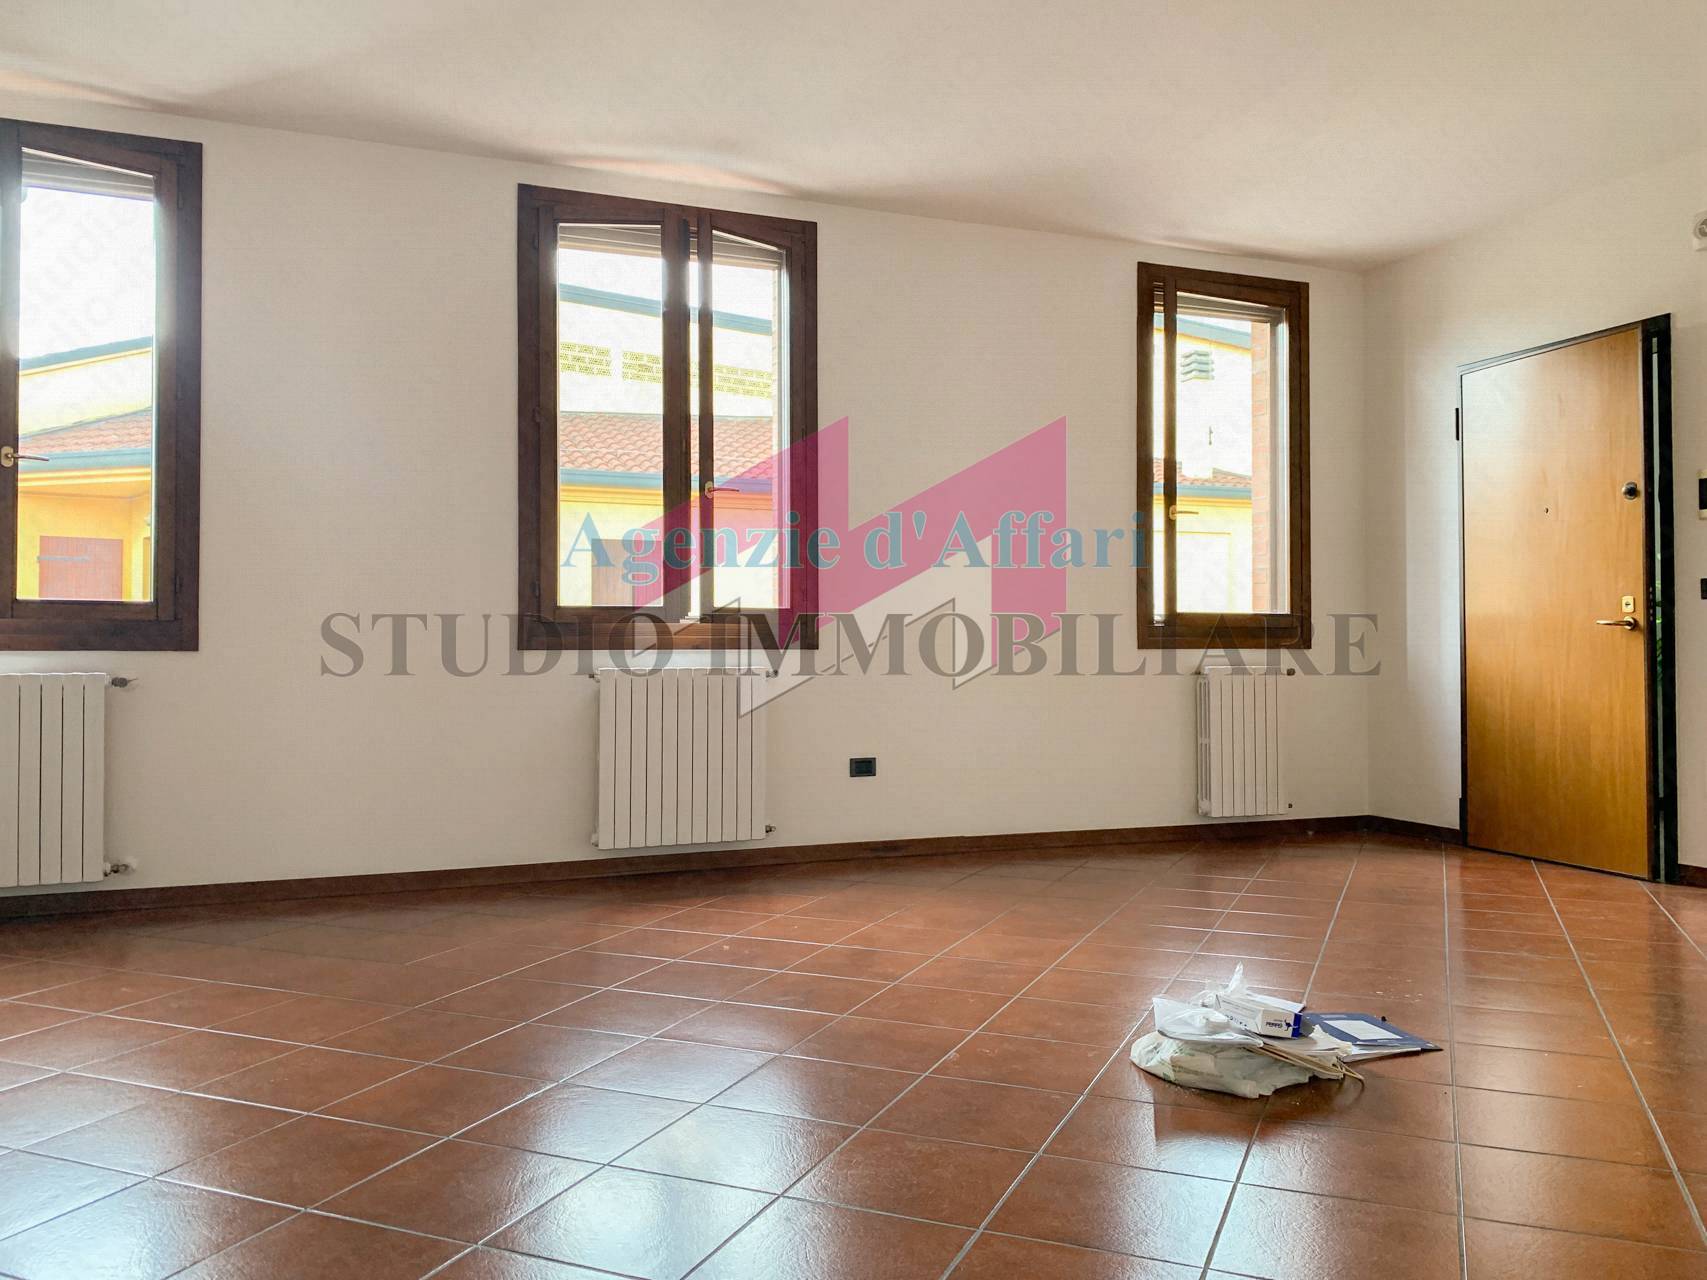 Appartamento in vendita a Castelmassa, 5 locali, prezzo € 125.000 | PortaleAgenzieImmobiliari.it